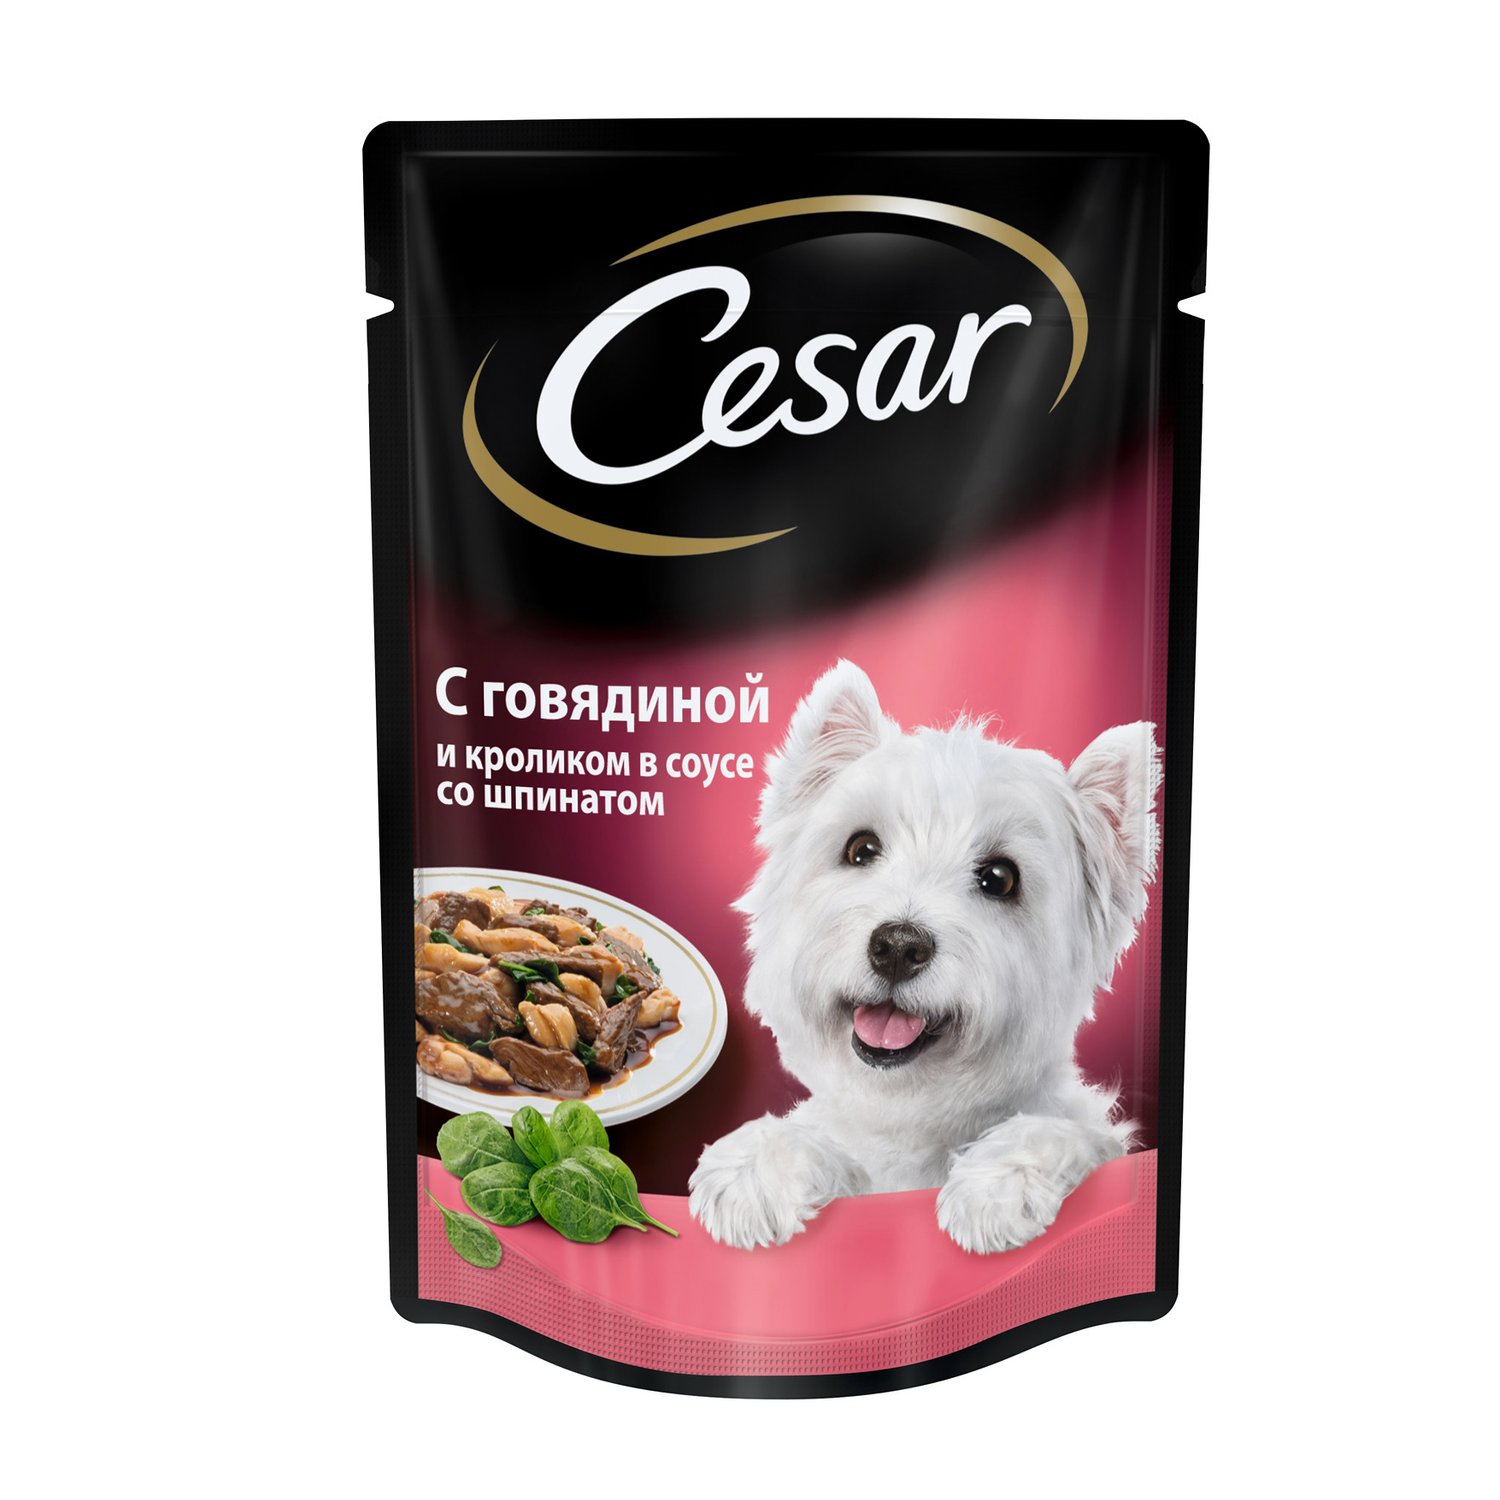 фото Влажный корм для собак cesar, с говядиной и кроликом в соусе под шпинатом, 100г